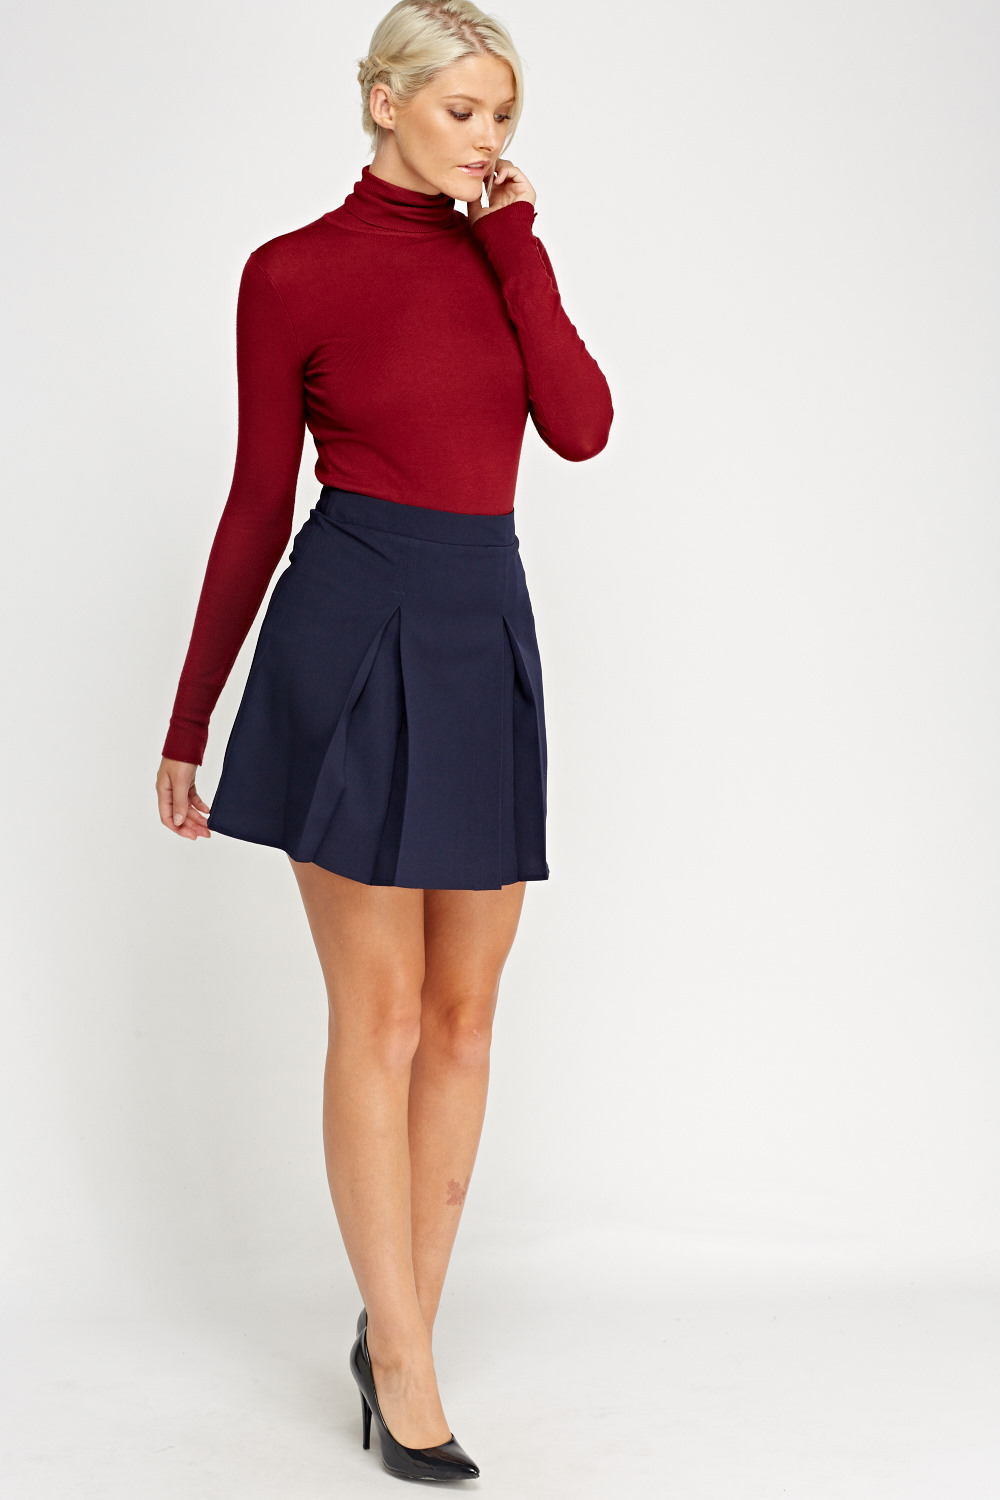 Pleated Casual Mini Skirt - Just $6